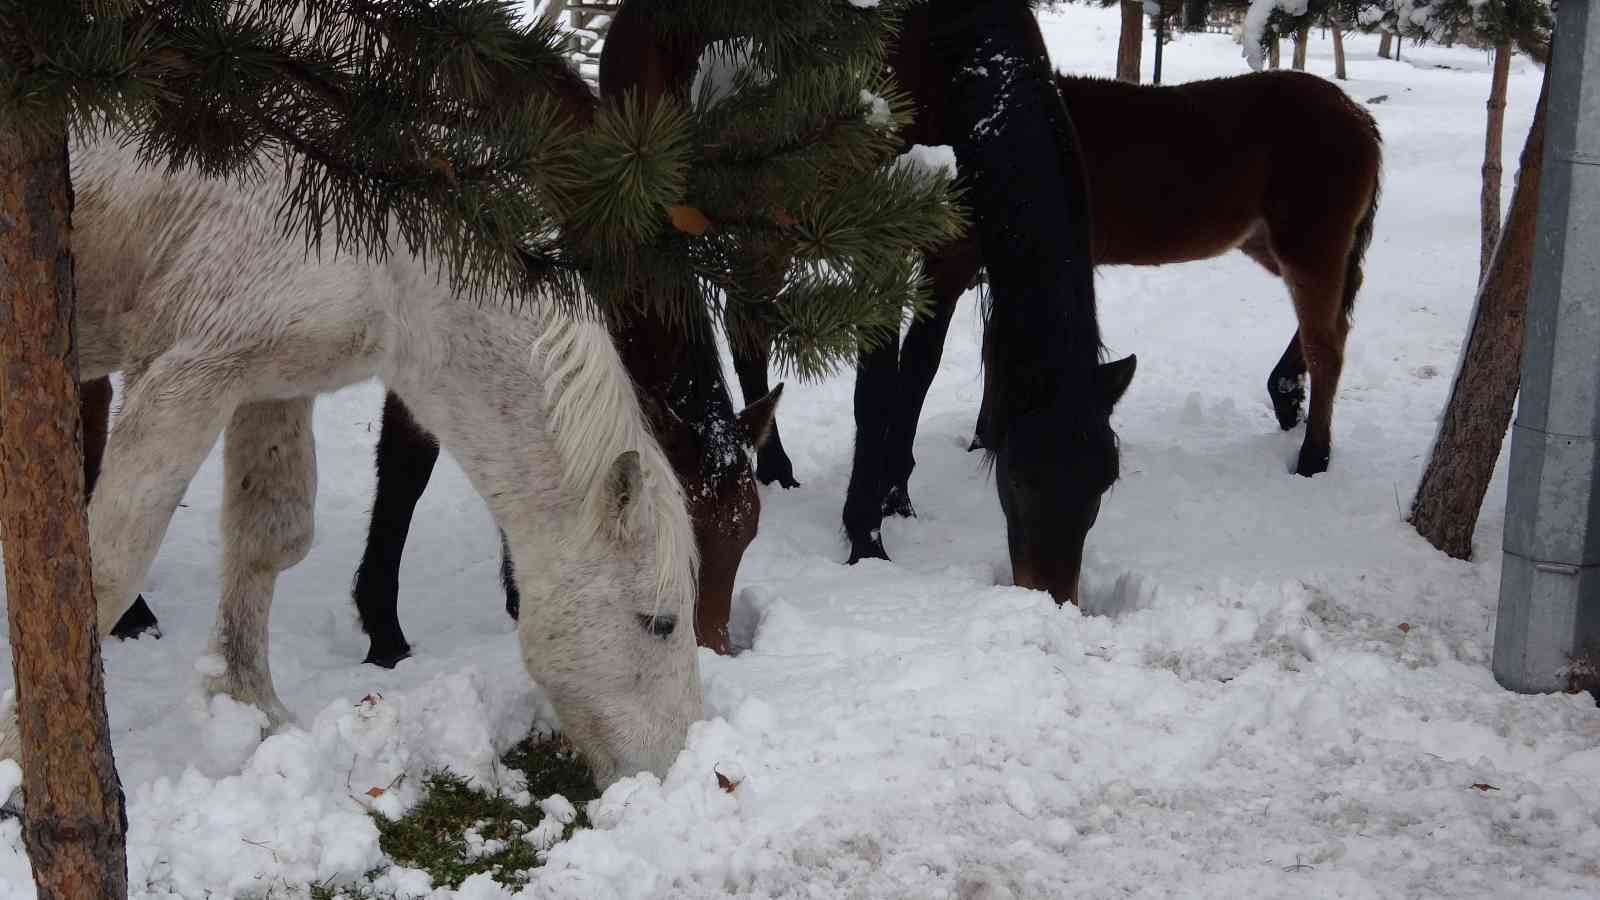 Ardahan’ın yılkı atları kışın özgür, yazın sahipli #ardahan